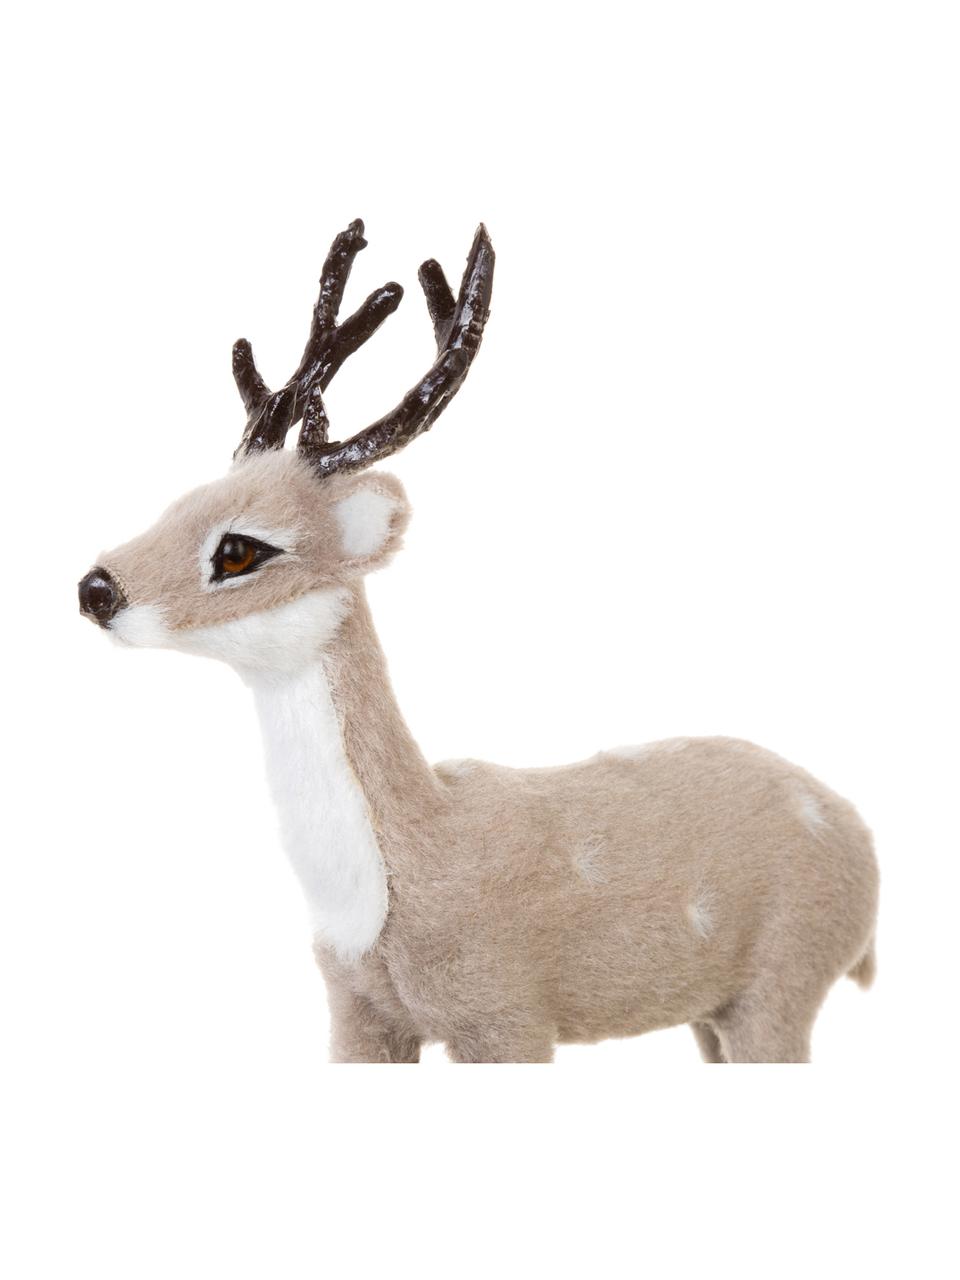 Sada dekorací Deer, 3 díly, Umělá hmota, Hnědá, šedá, bílá, Š 8 cm, V 13 cm